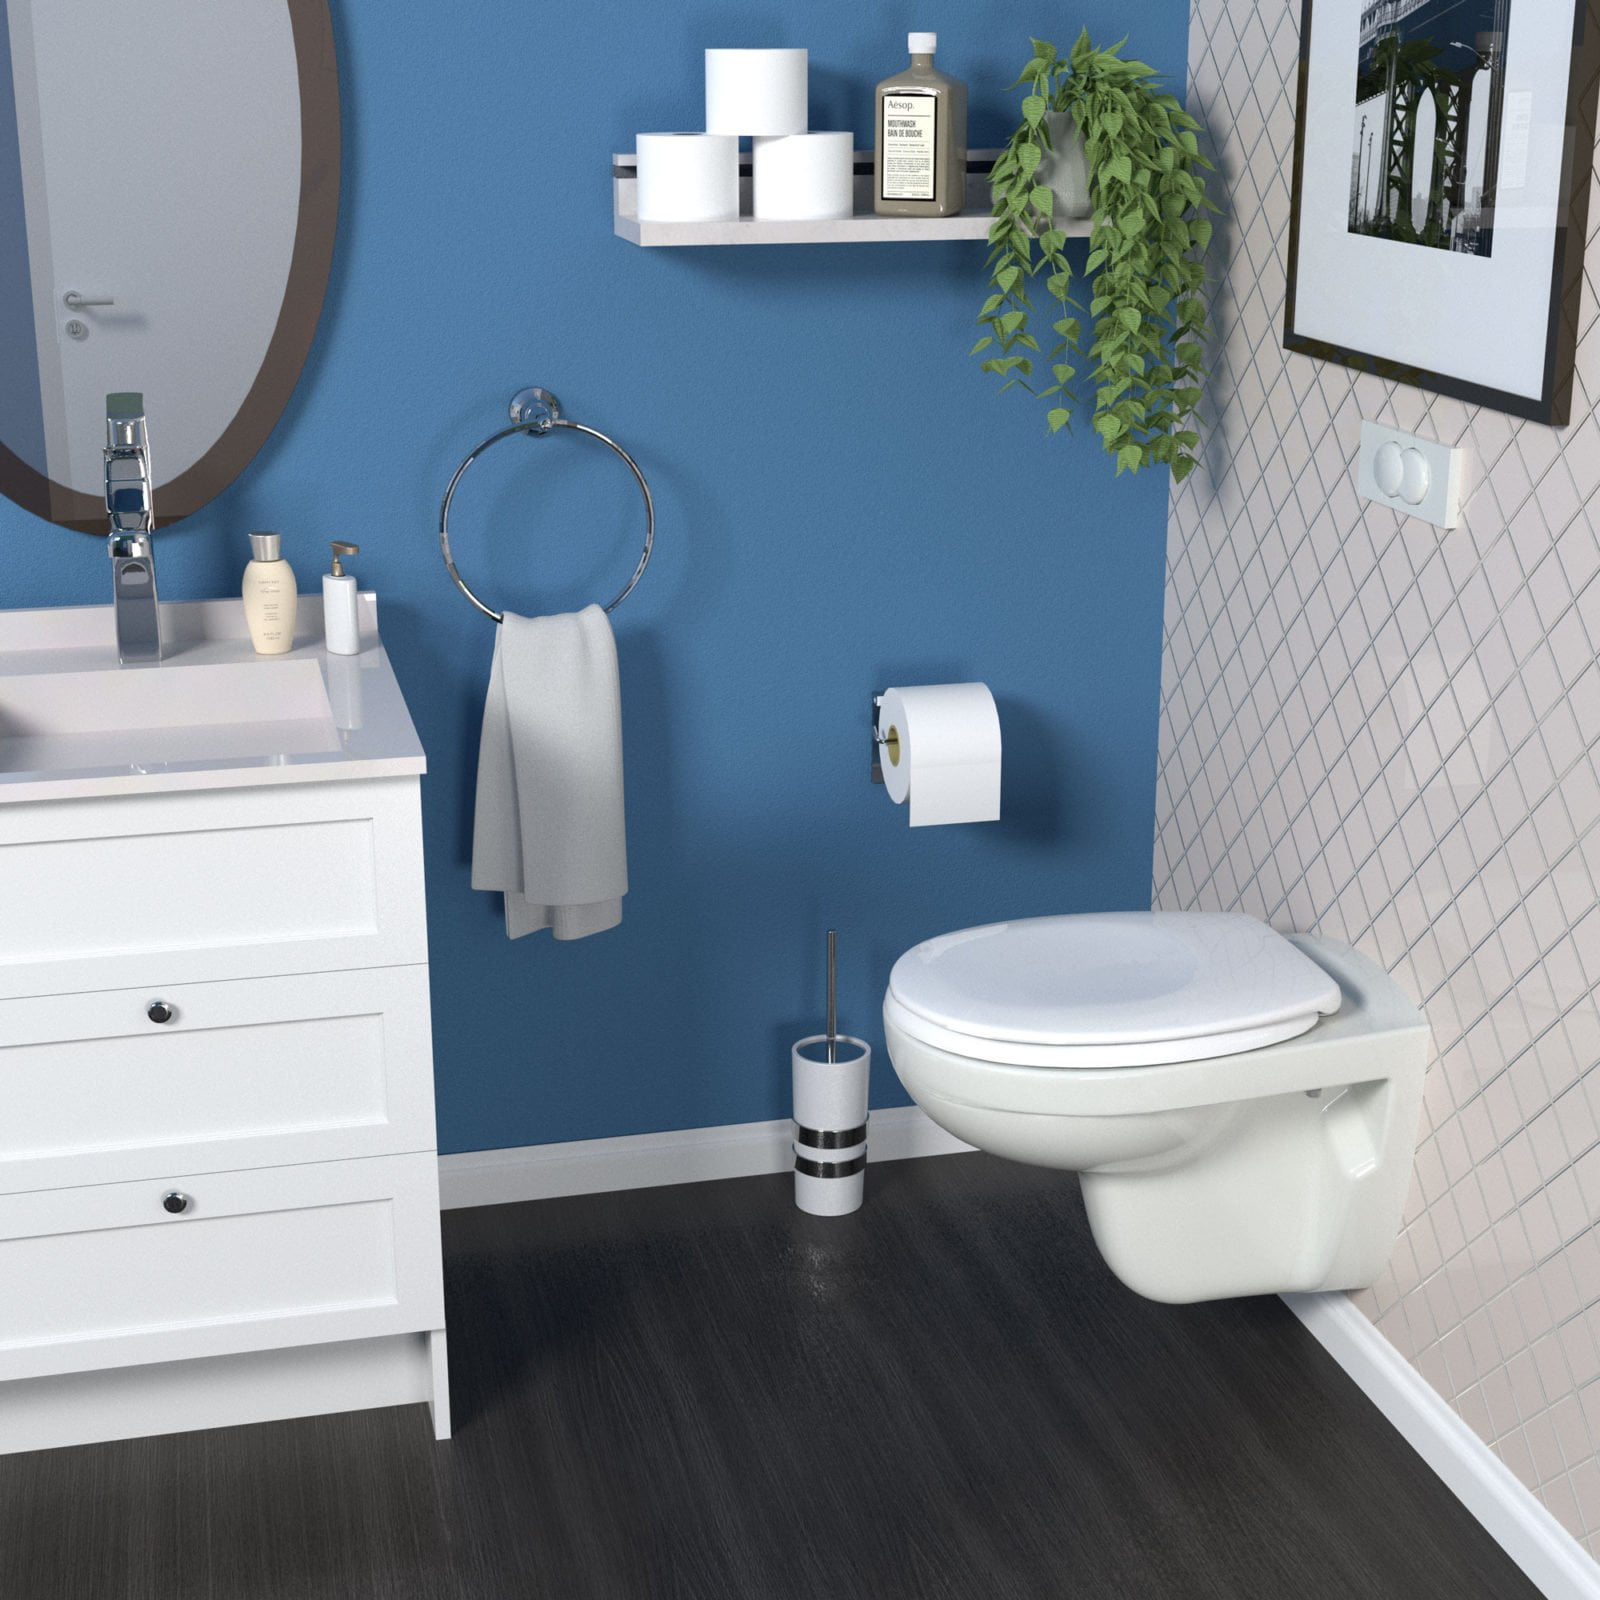 renderiranje wc sjedala u kupaonici bemis designer2 dizajn ambalaze packaging design 2